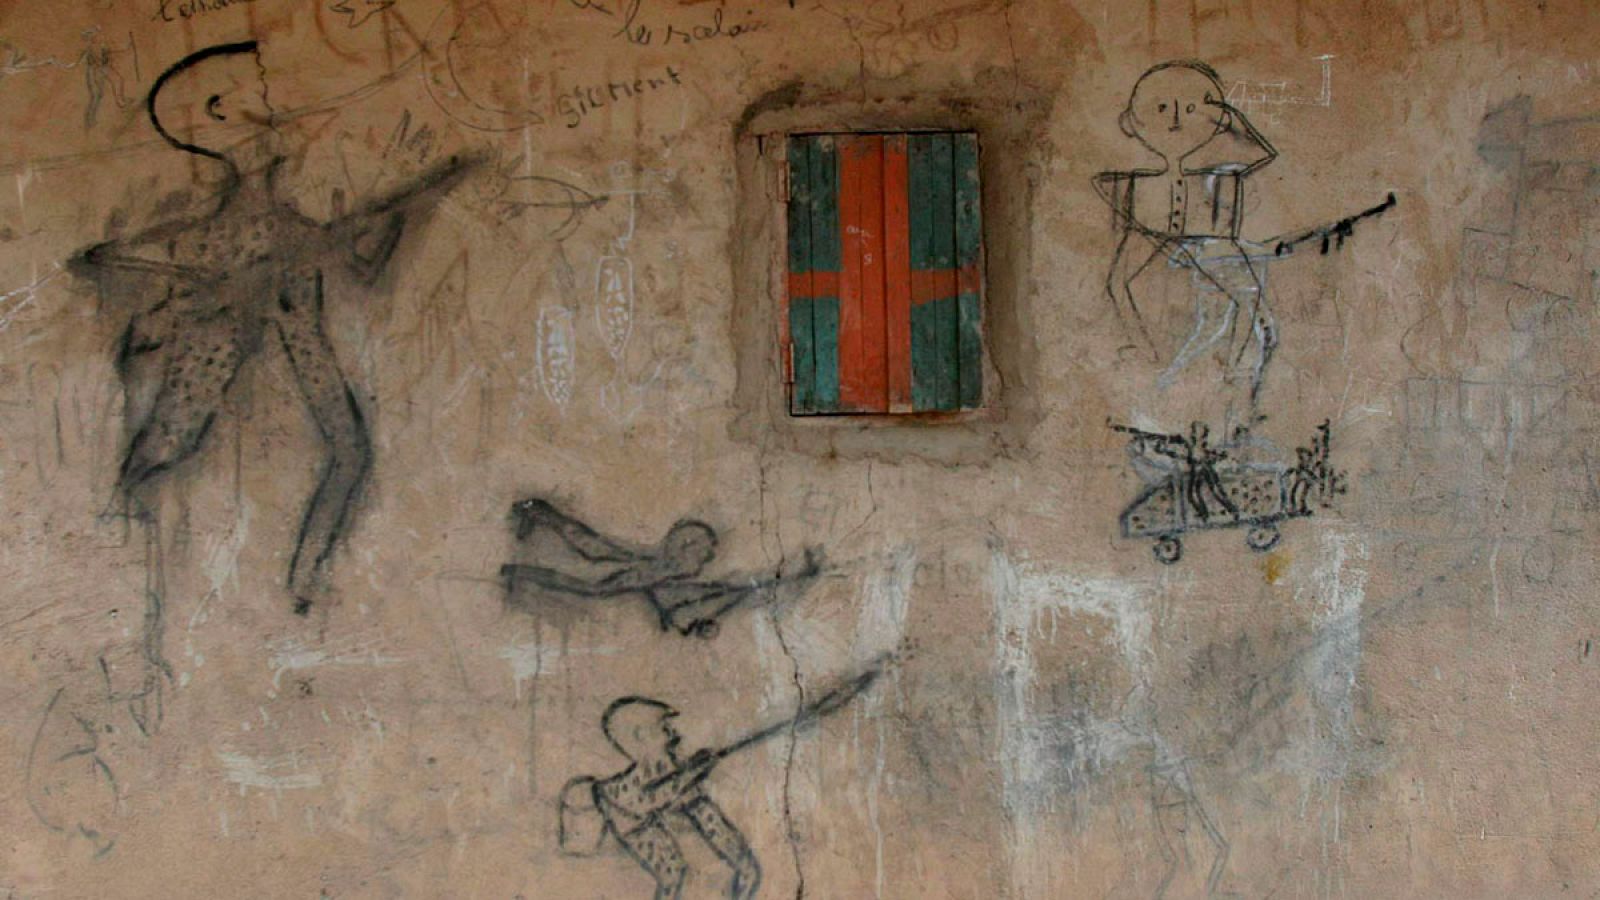 Dibujos hechos sobre un muro de una casa que representan a hombres armados disparando en el poblado de Beboura, al norte de la República Centroafricana.